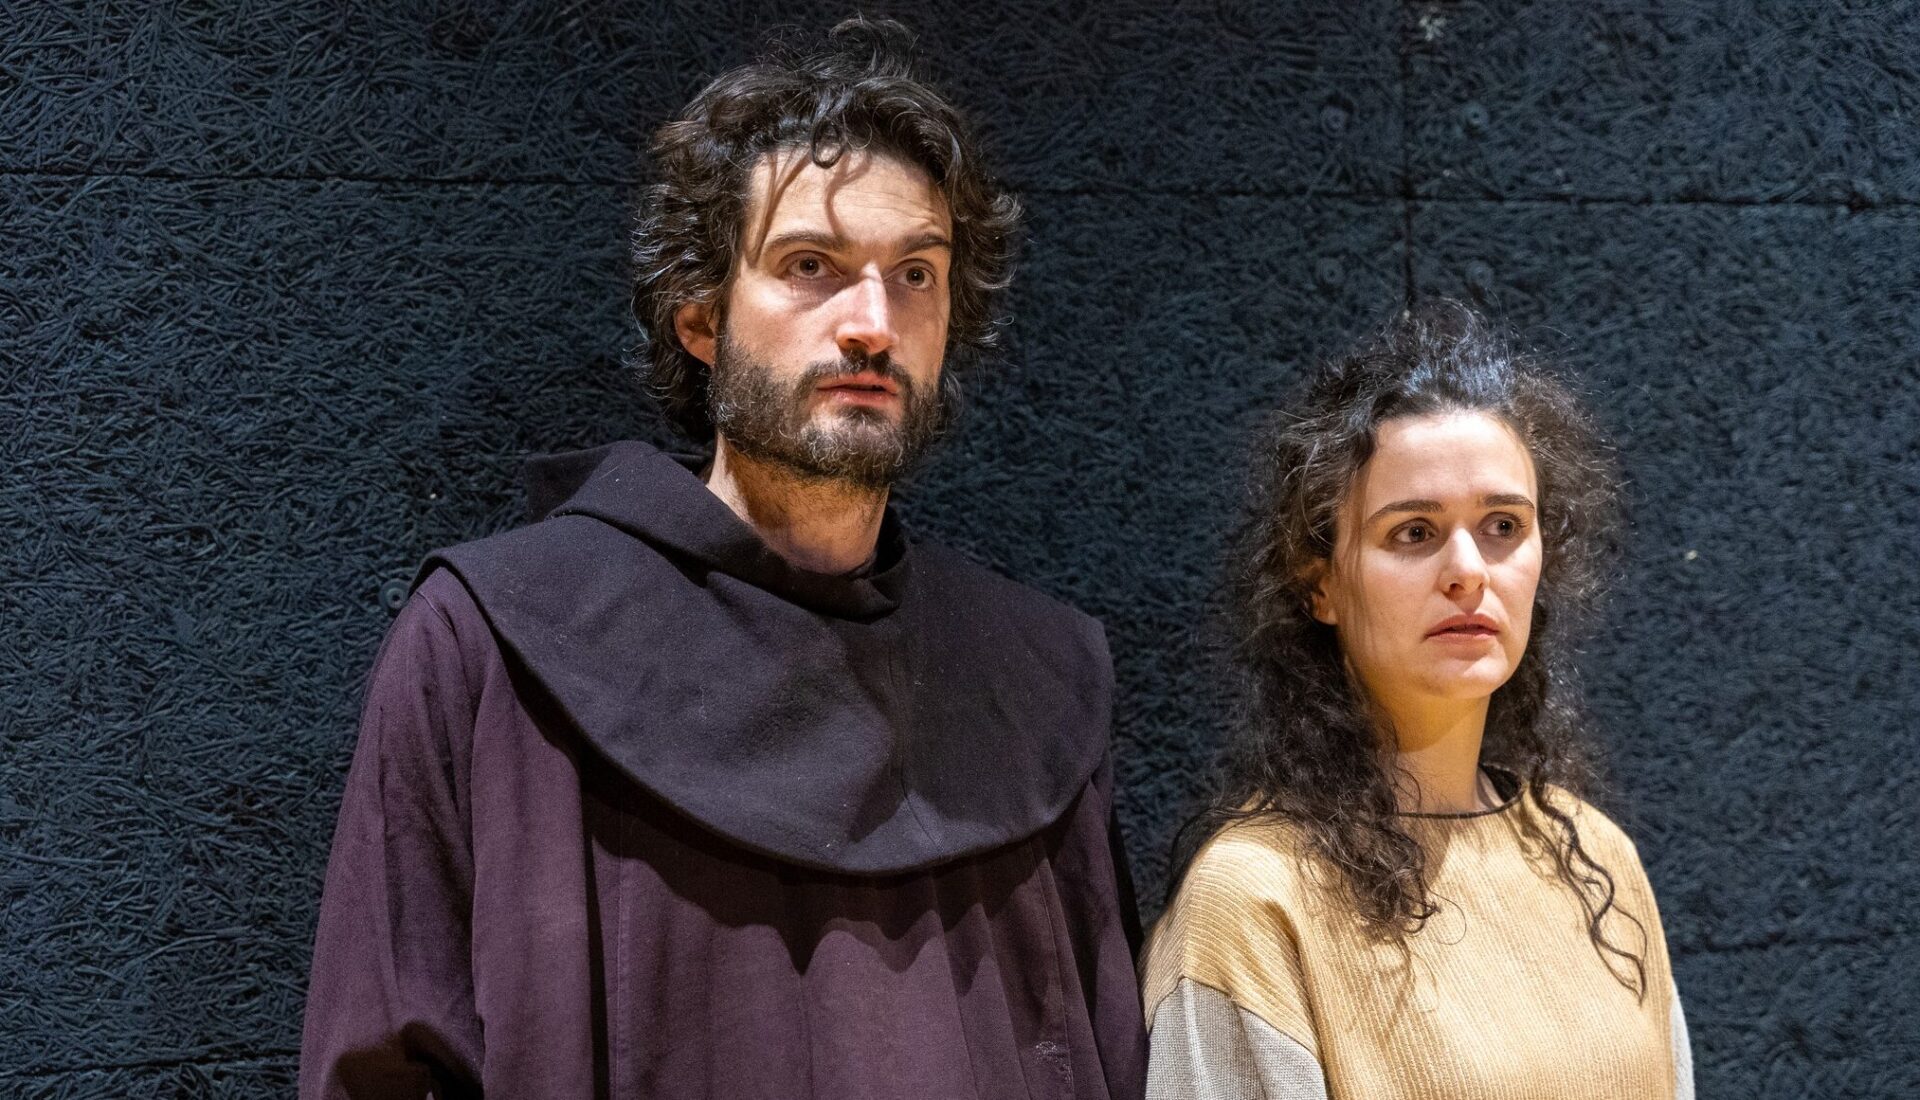 Chiara e Francesco, interpretati nello spettacolo da Matteo Bonanni e Giulia Marchesi